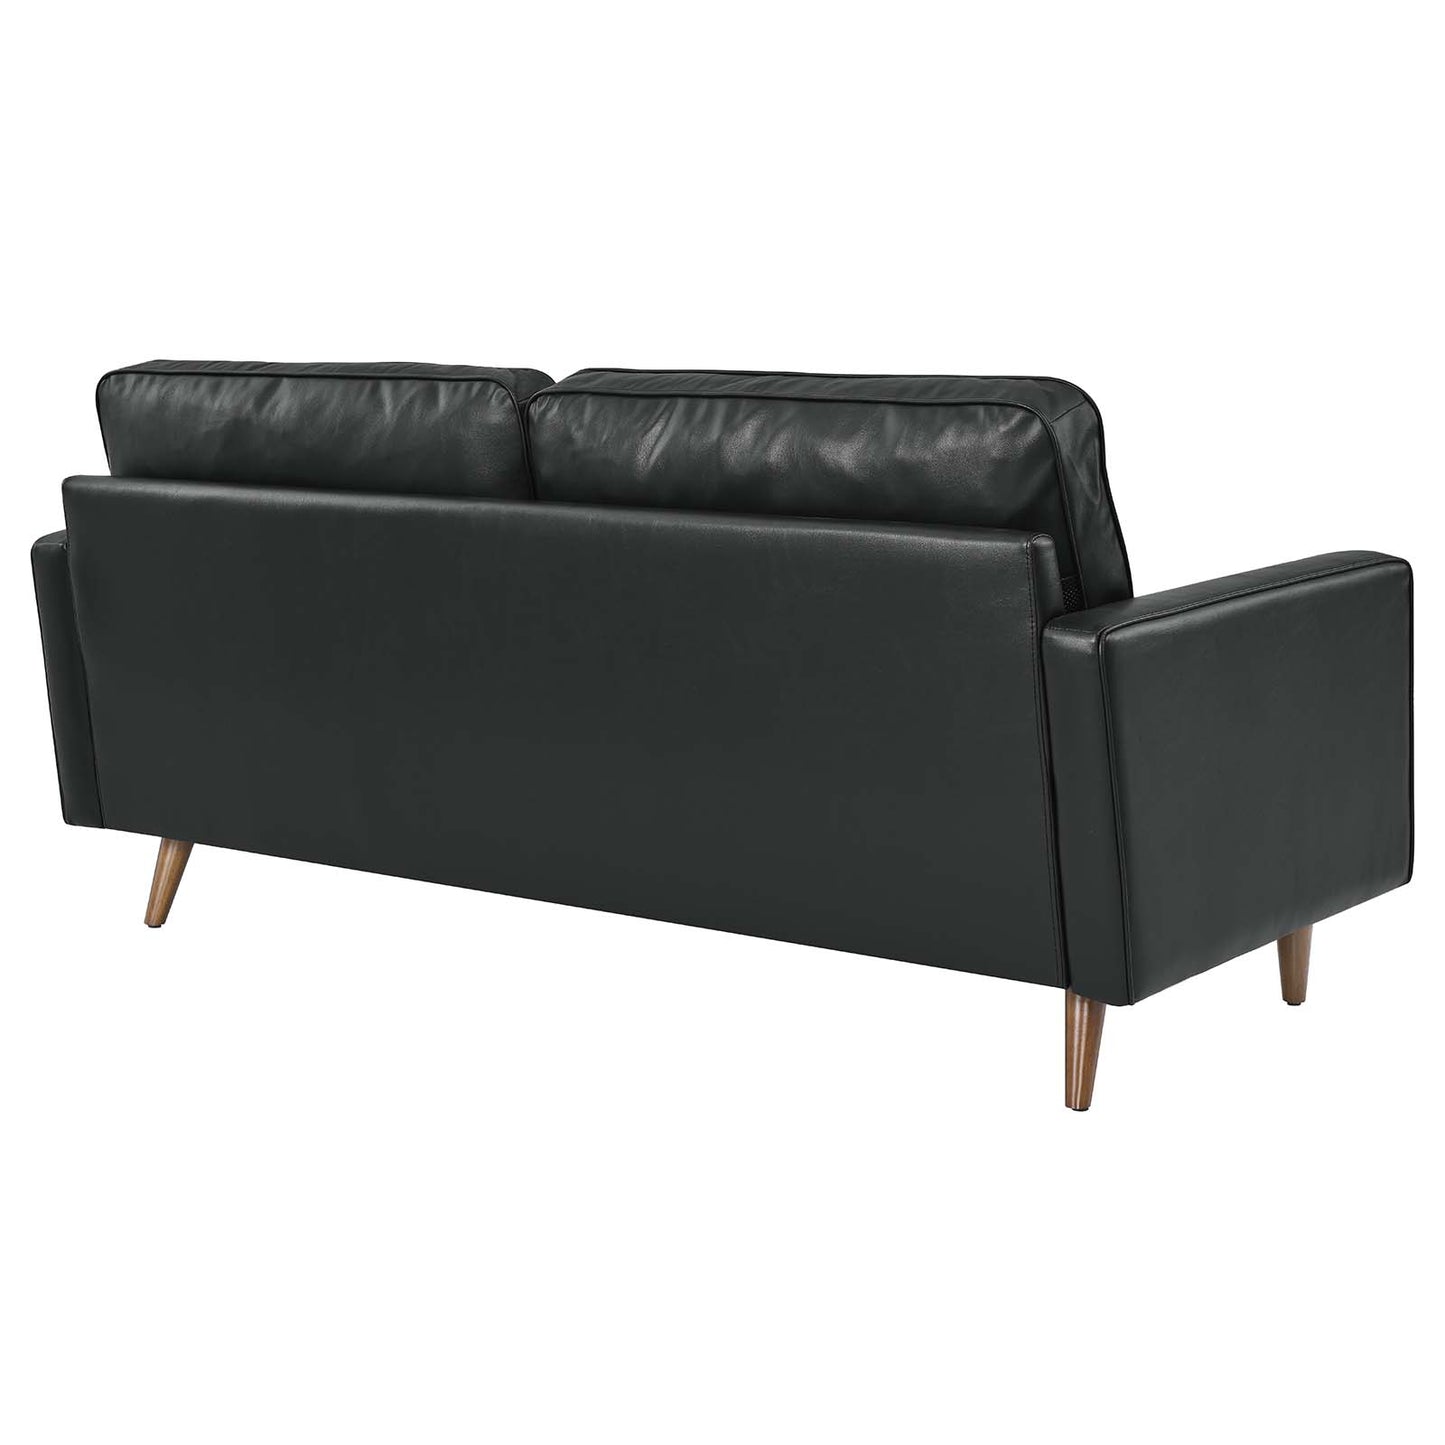 Valour Leather Sofa Black EEI-4633-BLK